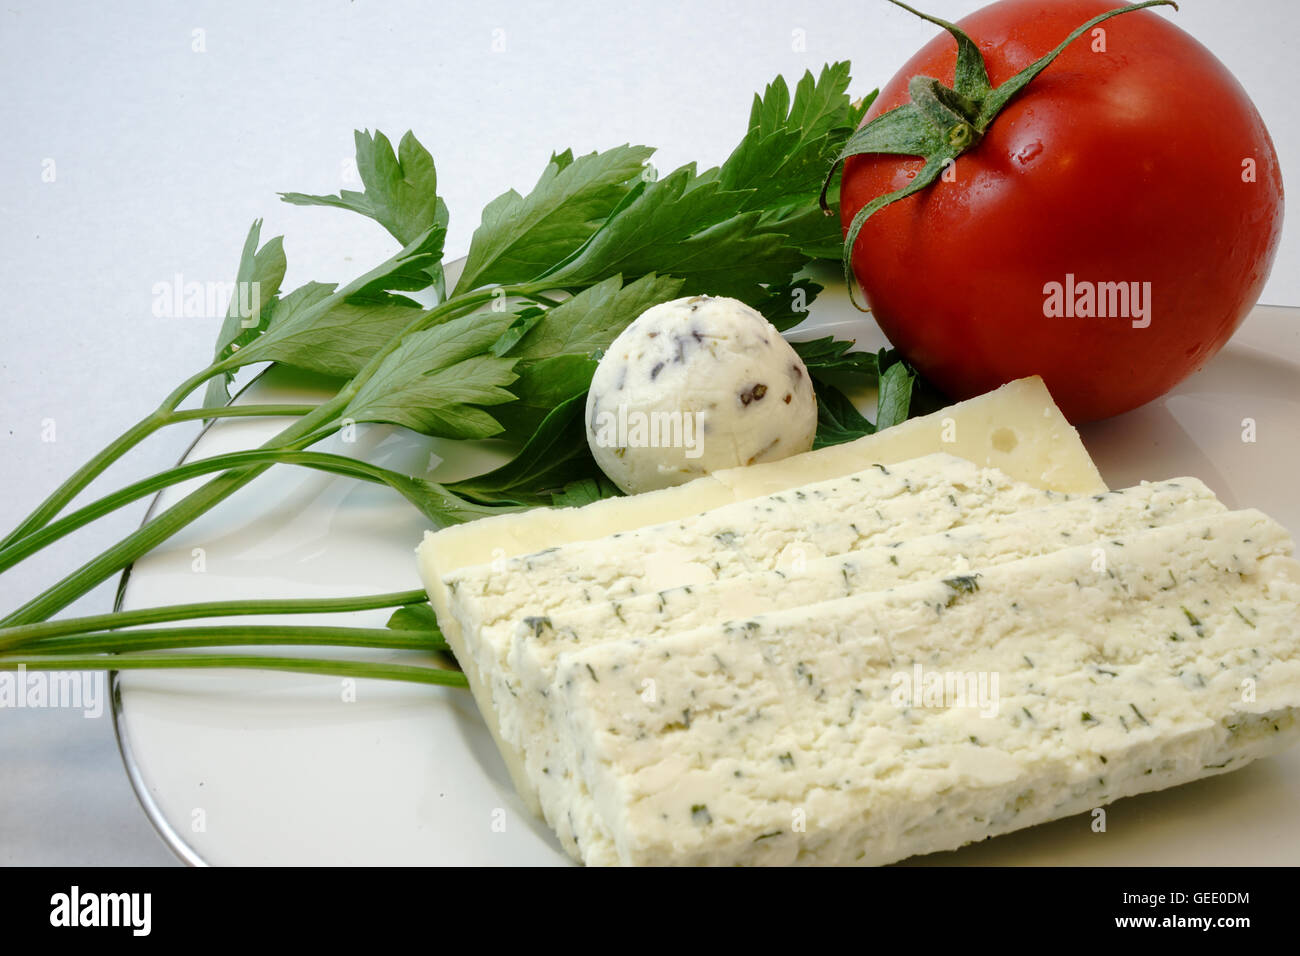 Le fromage et le persil et la tomate Banque D'Images